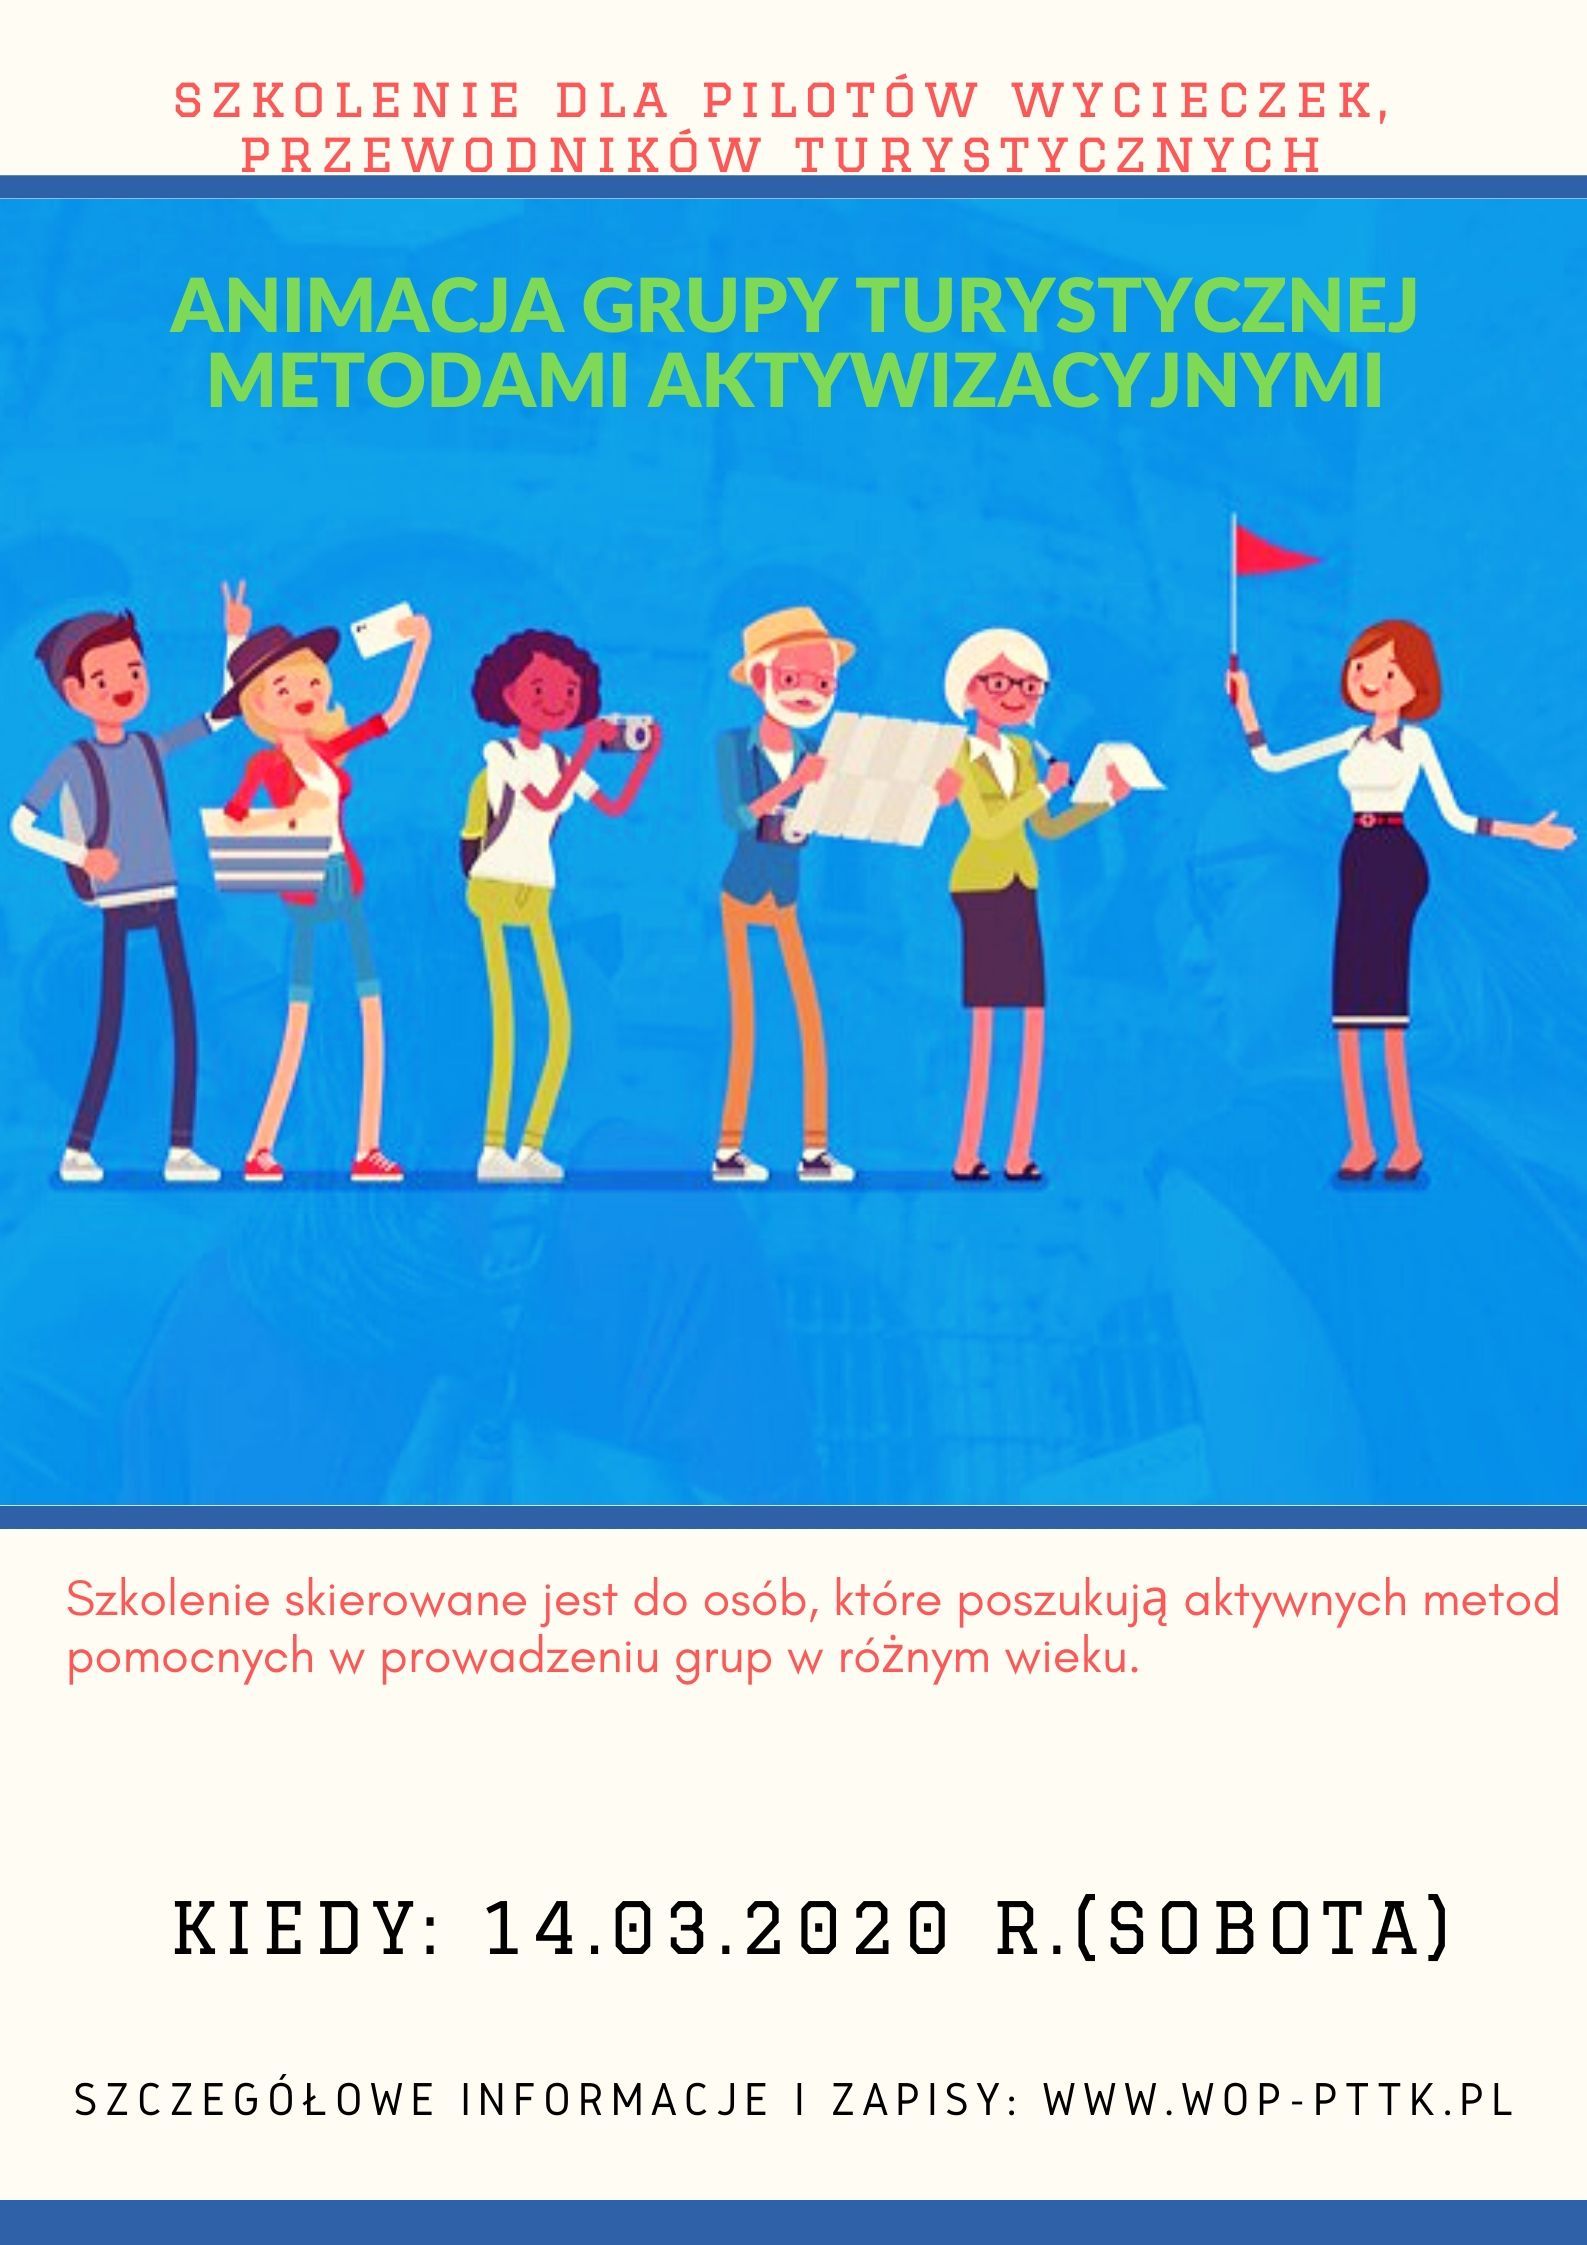 Animacja grupy turystycznej metodami aktywizującymi - 14.03.2020 r. (sobota)